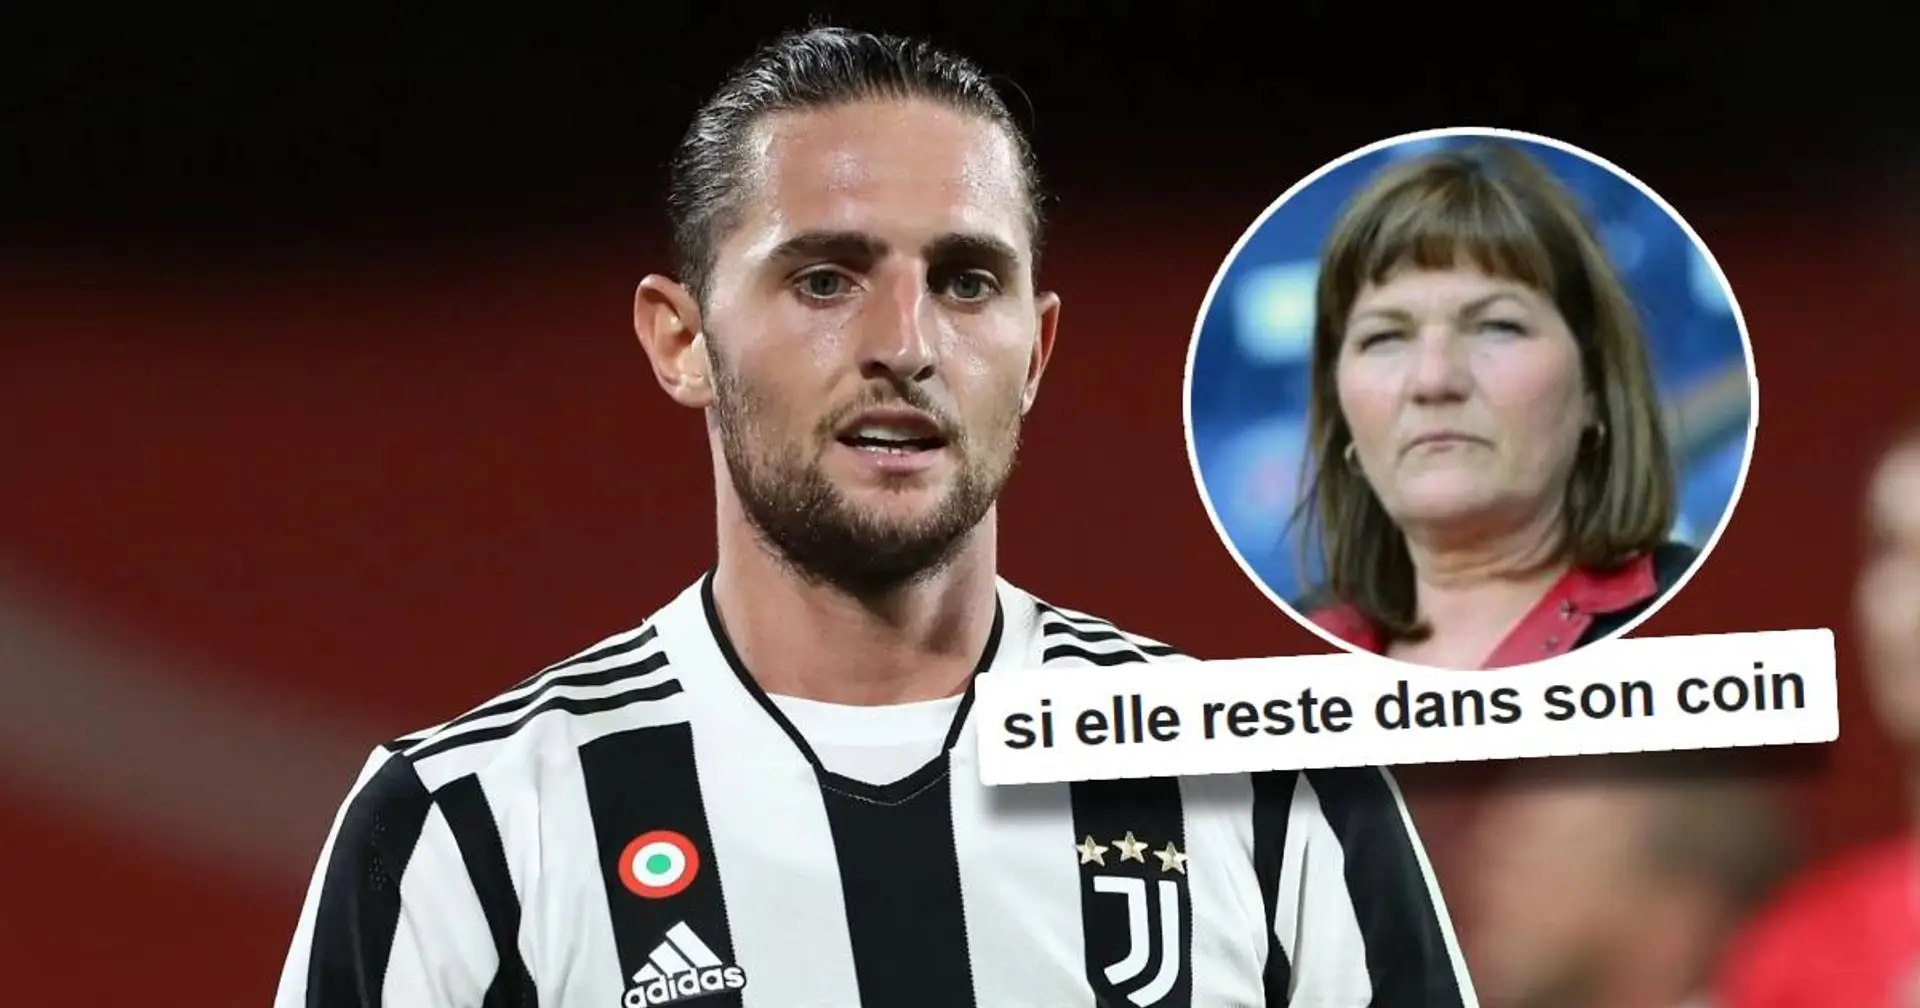 "Si il laisse sa maman à Turin" : Les fans sont pour un potentiel retour de Rabiot, mais un élément peut poser problème